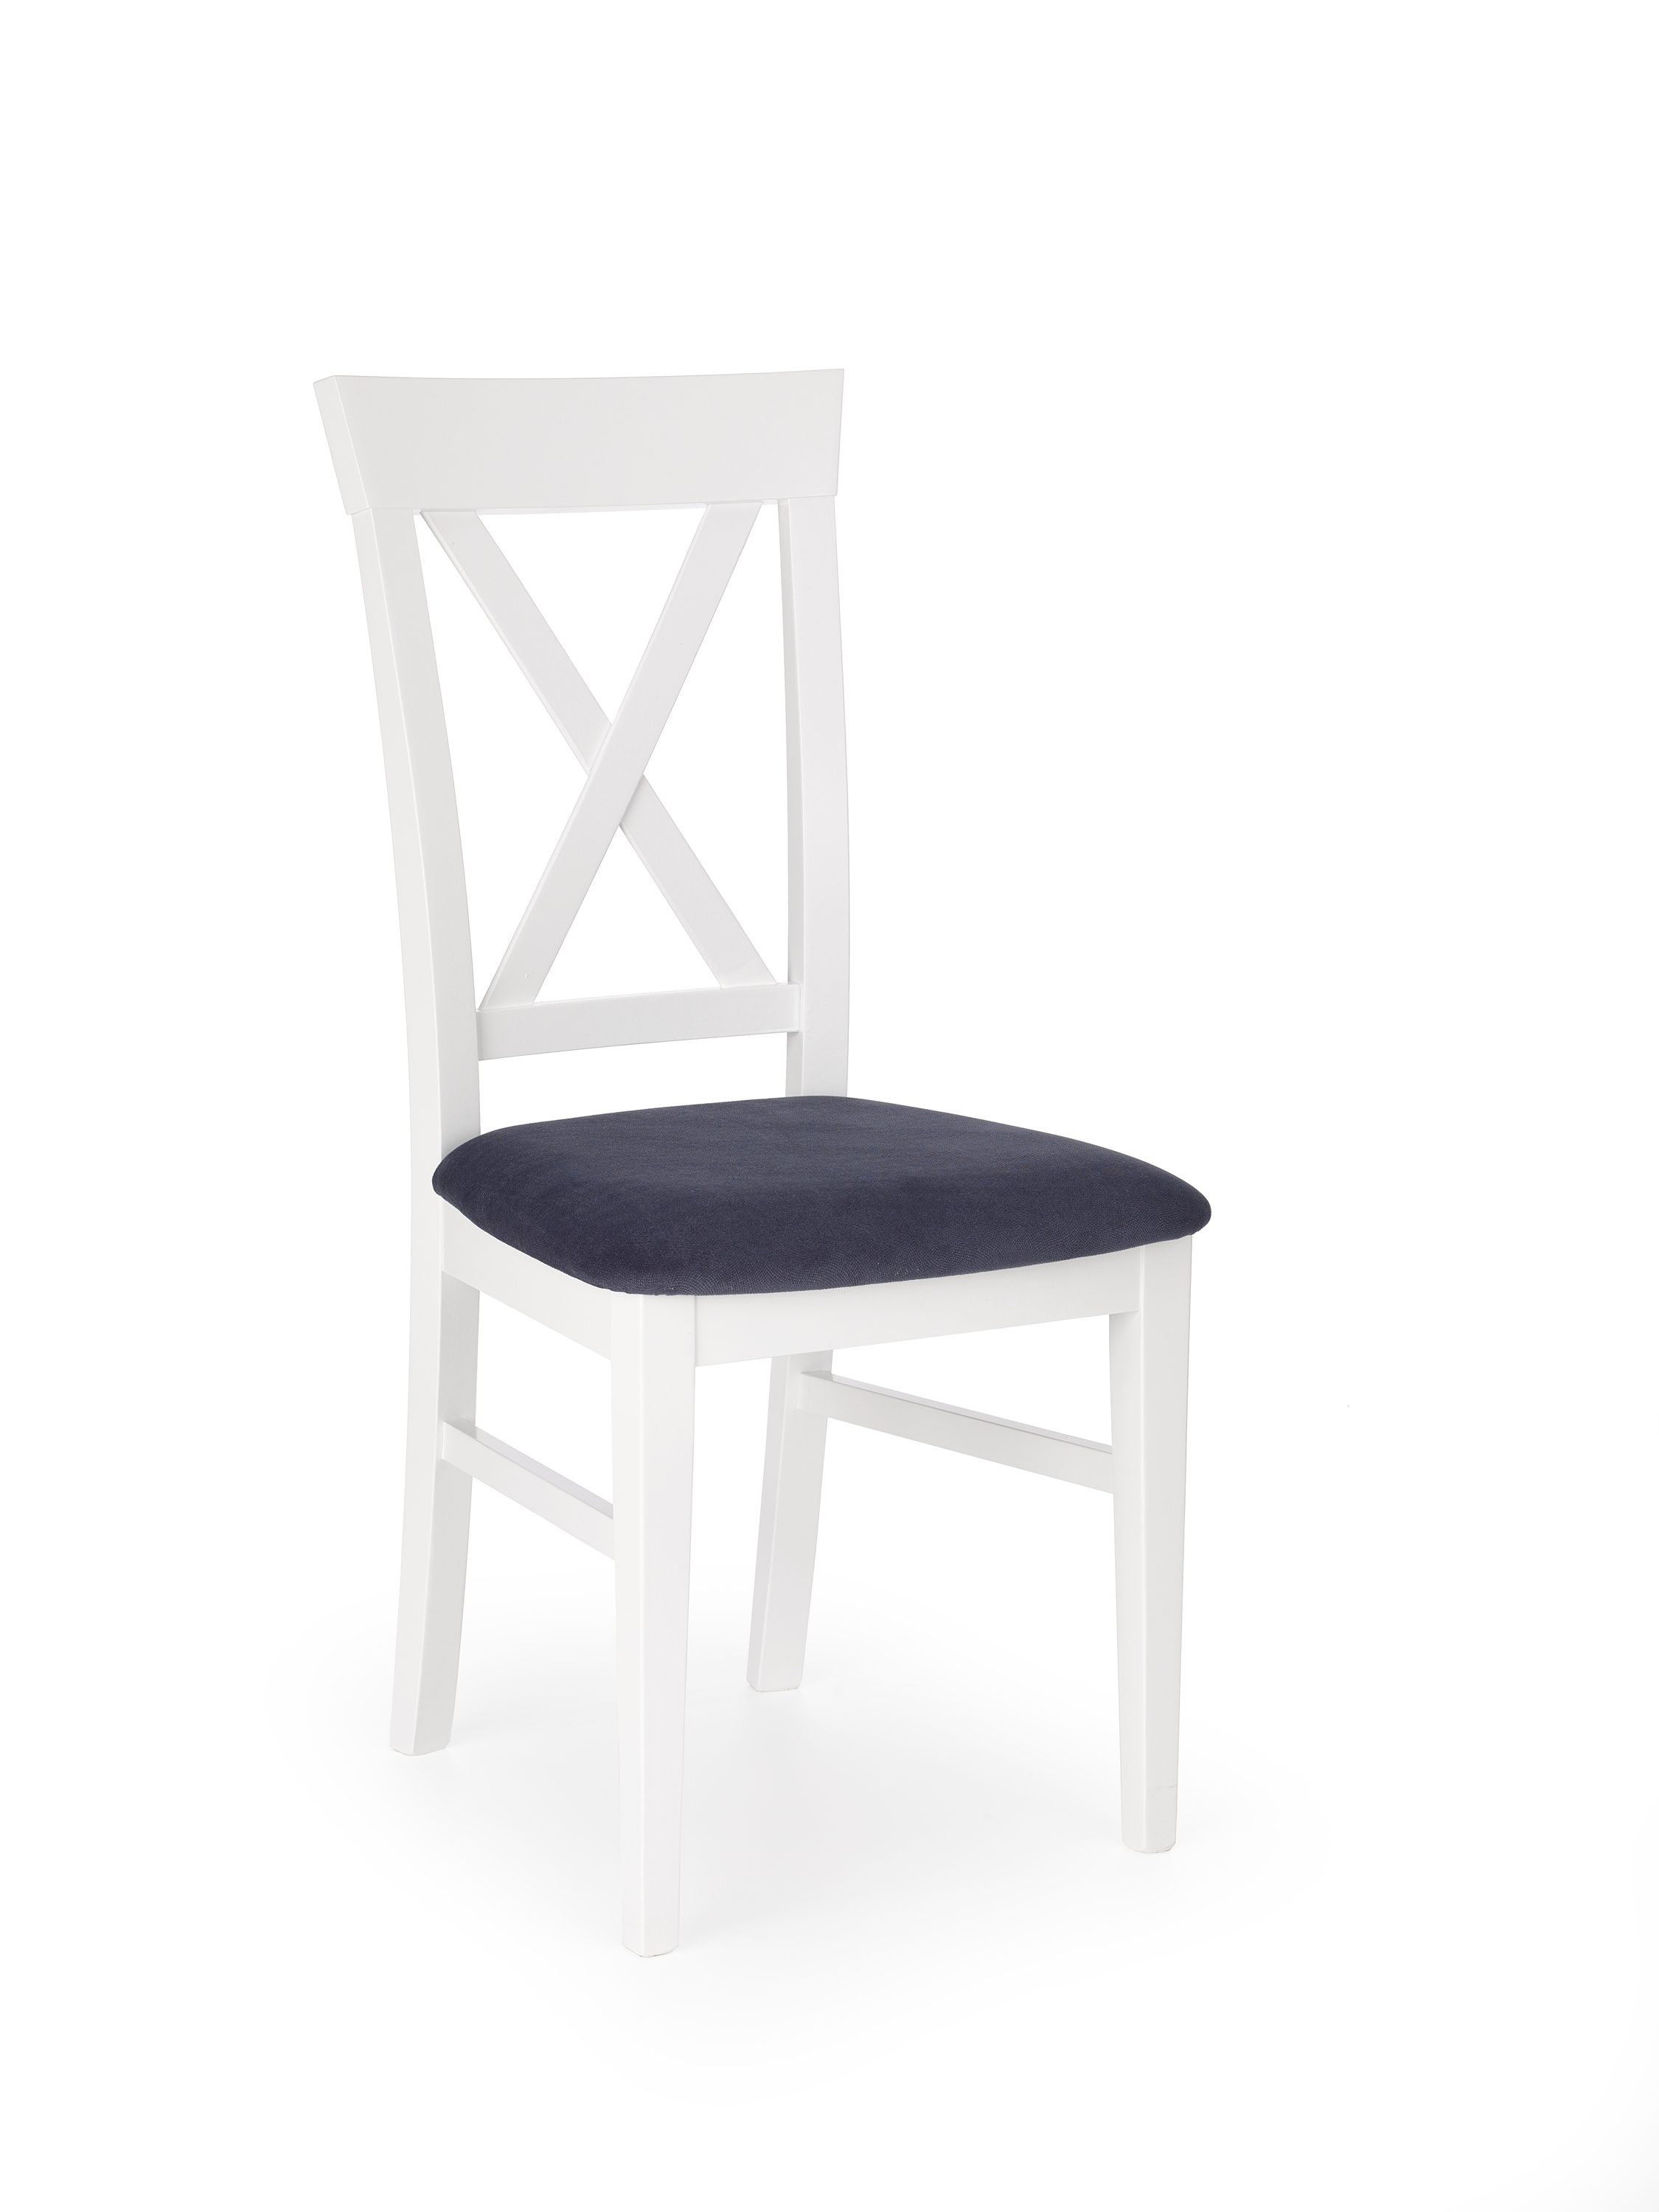 Bergamo szék - fehér / sötétkék bergamo Židle - bílý / tmavě modrý